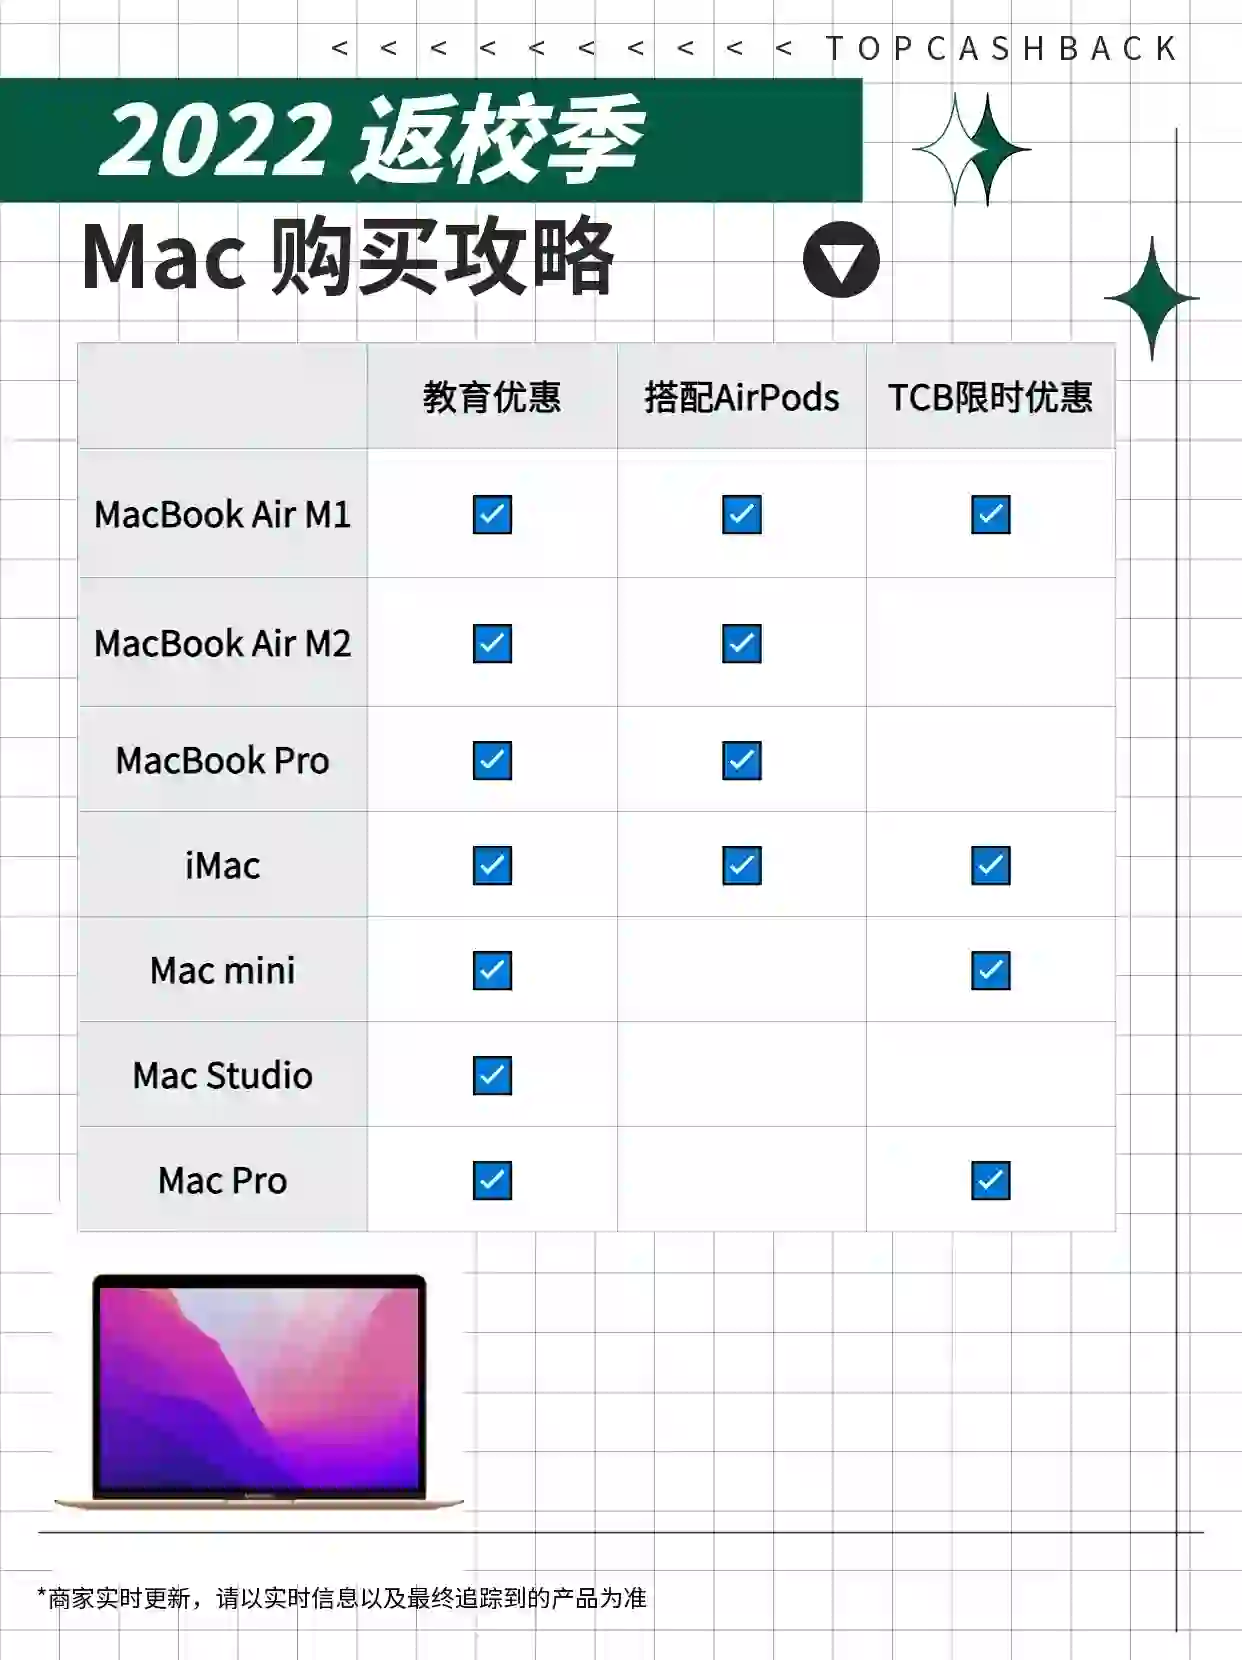 2022年 Apple 中国 Mac电脑教育优惠返利